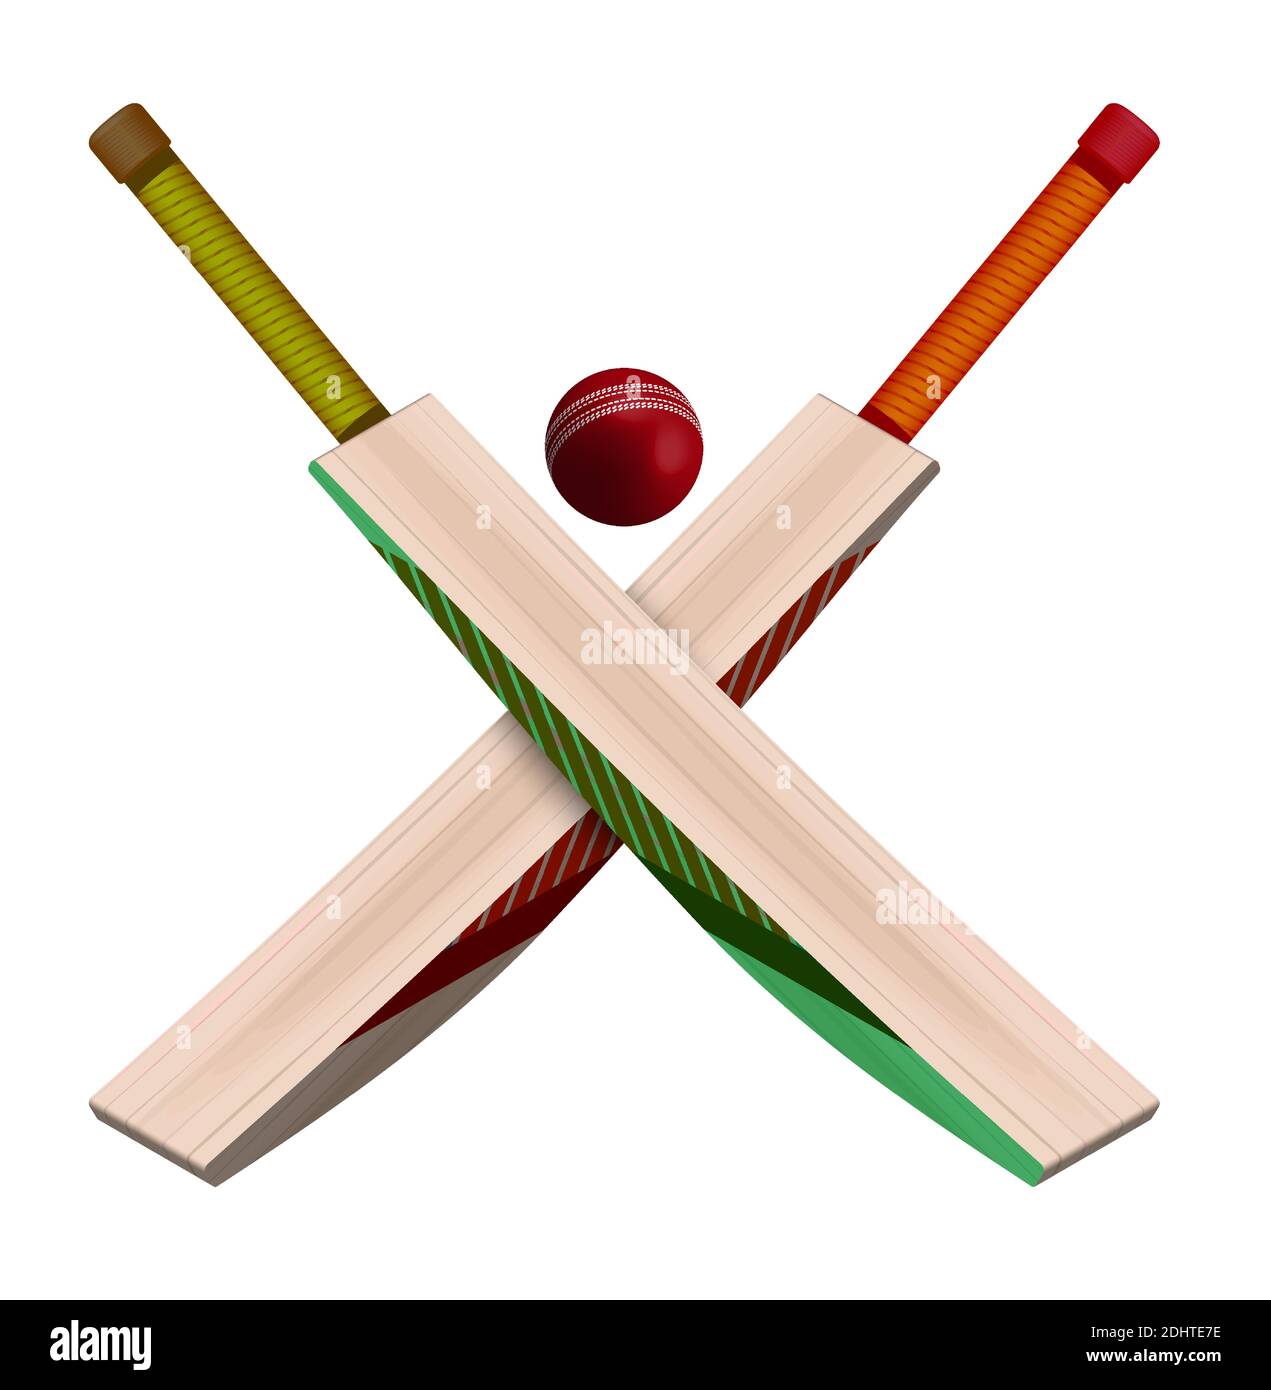 chauves-souris en bois croisé et ballon de cricket rouge en cuir avec un style réaliste sur fond blanc. Sports d'équipe d'été. Vecteur sur fond blanc Illustration de Vecteur